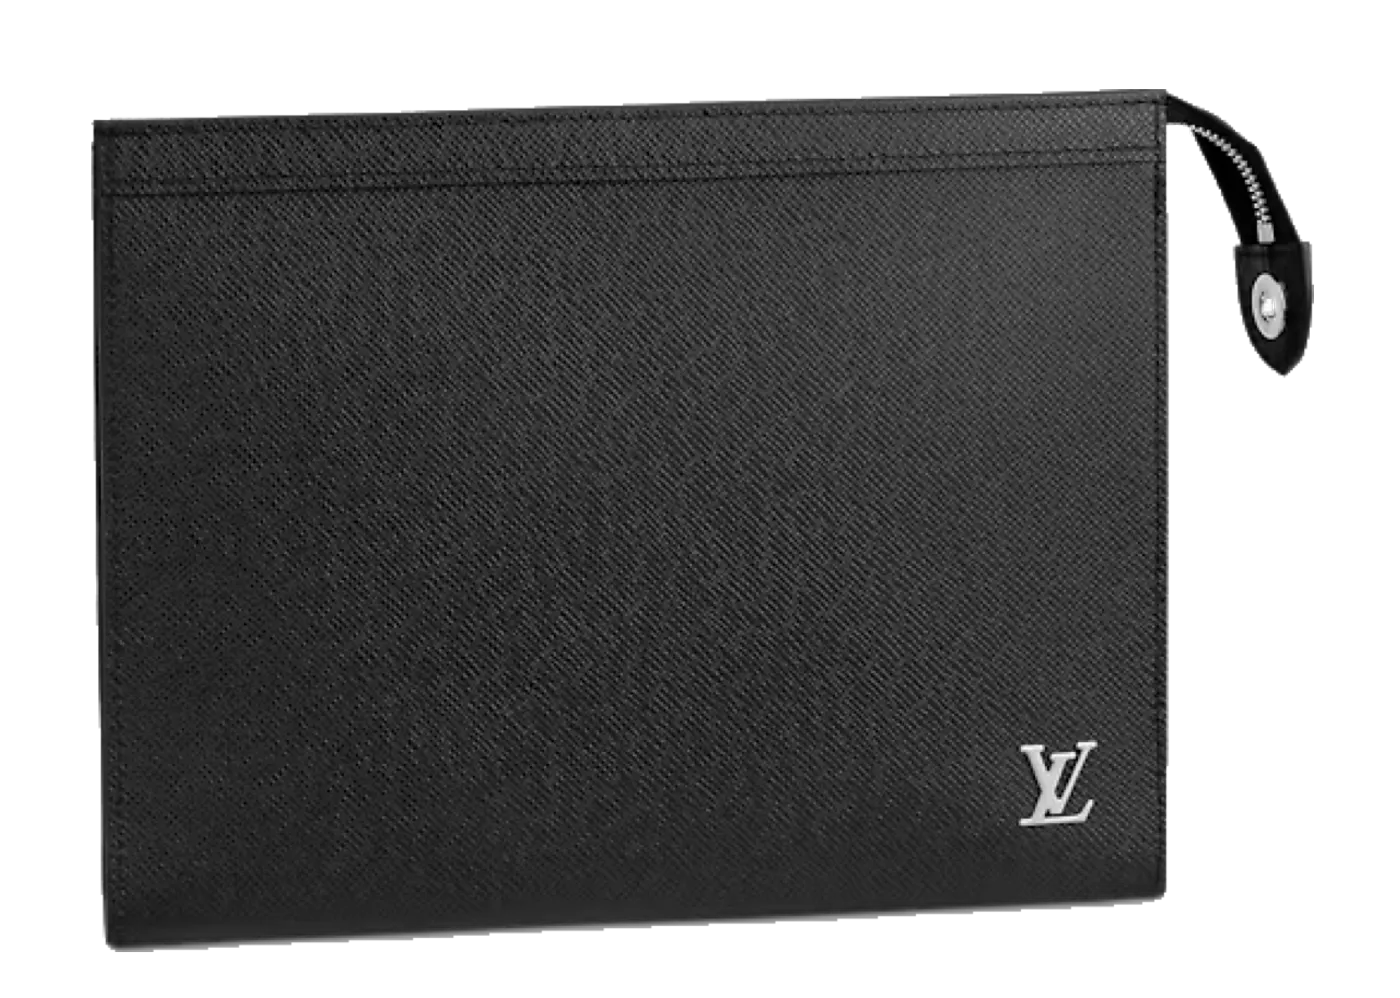 Biar Gak Tertipu, Simak Cara Bedakan Tas Louis Vuitton Asli dan Palsu,  mulai Logo hingga Resleting! - Tribunjatim.com